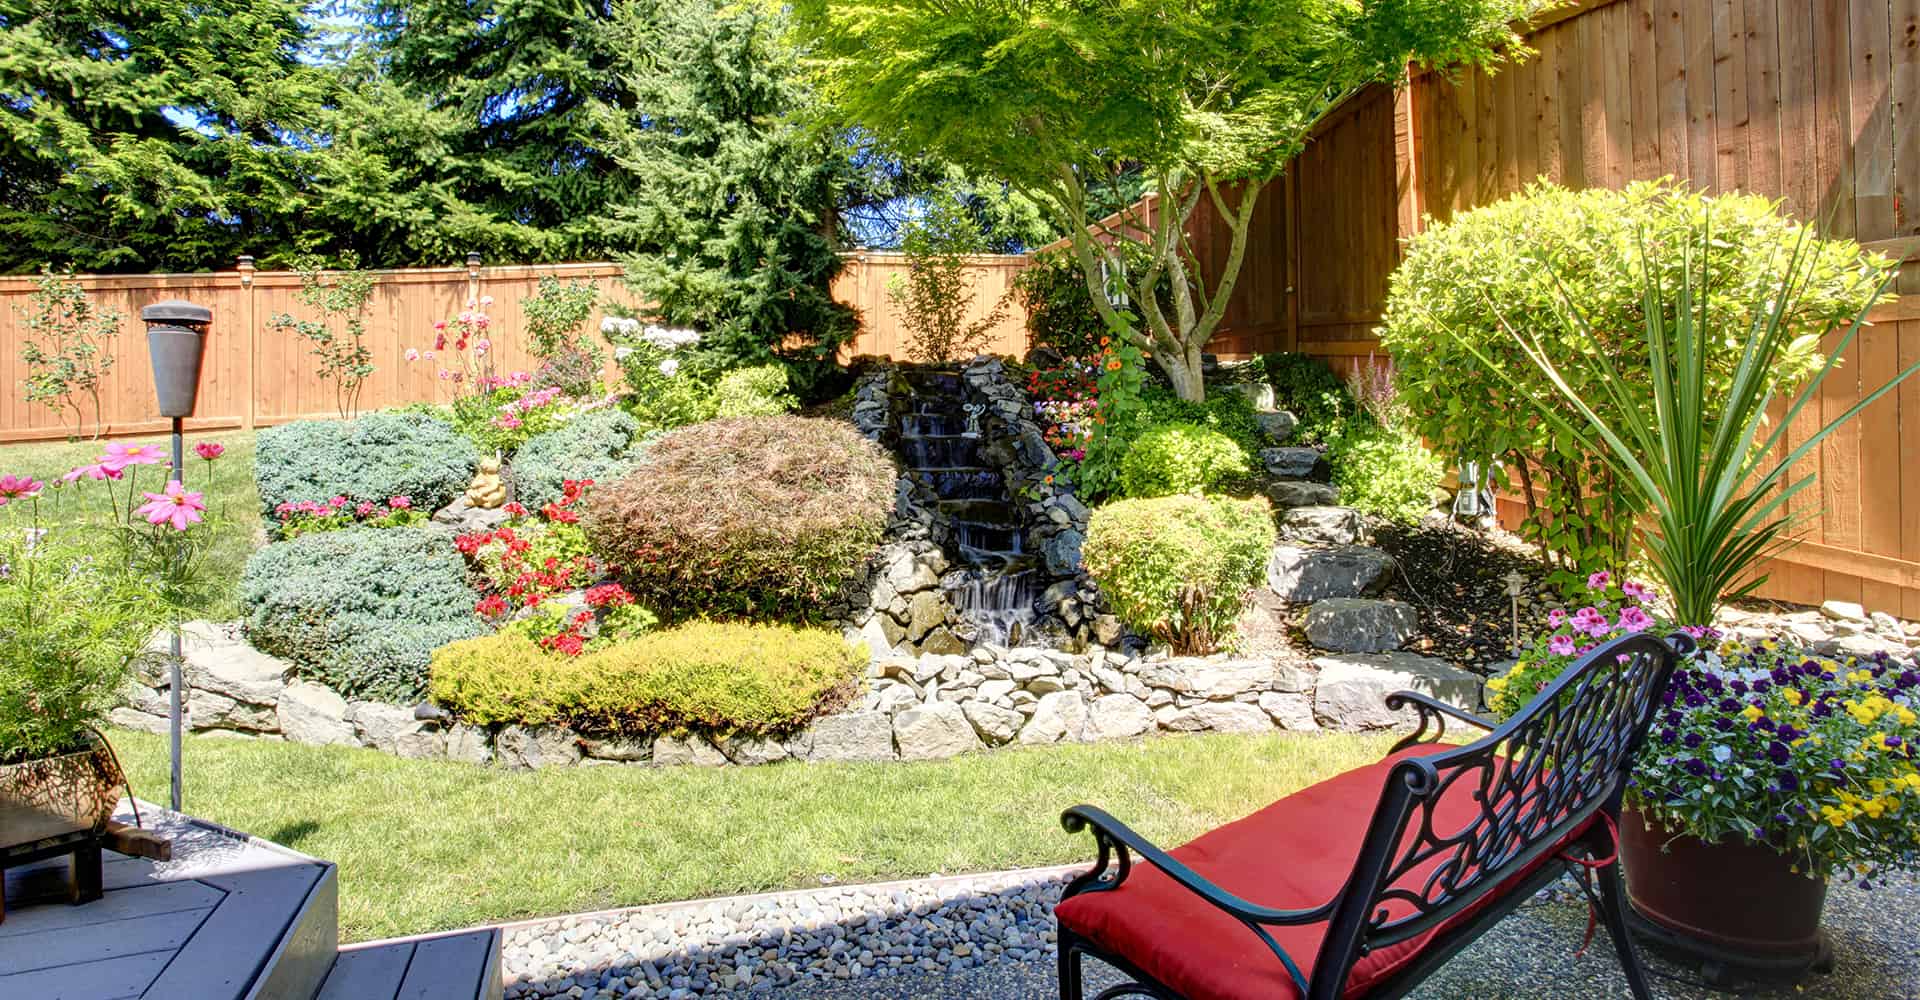 5 Adorable Home Garden Decoration Ideas